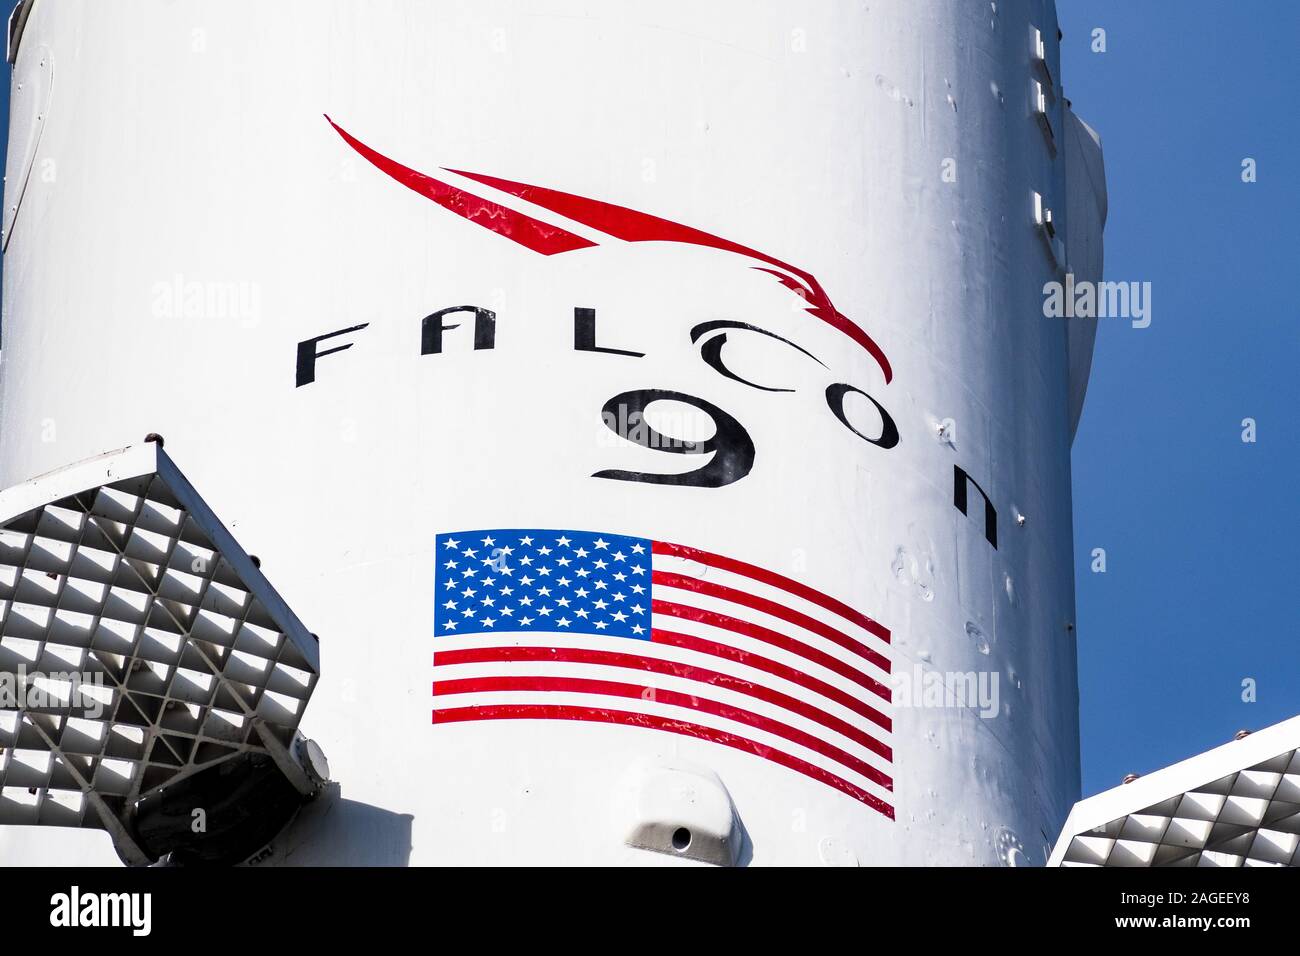 8 déc 2019 Hawthorne / Los Angeles / CA / USA - fusée Falcon 9 logo chez SpaceX (Space Exploration Technologies Corp.) ; siège SpaceX est une priva Banque D'Images